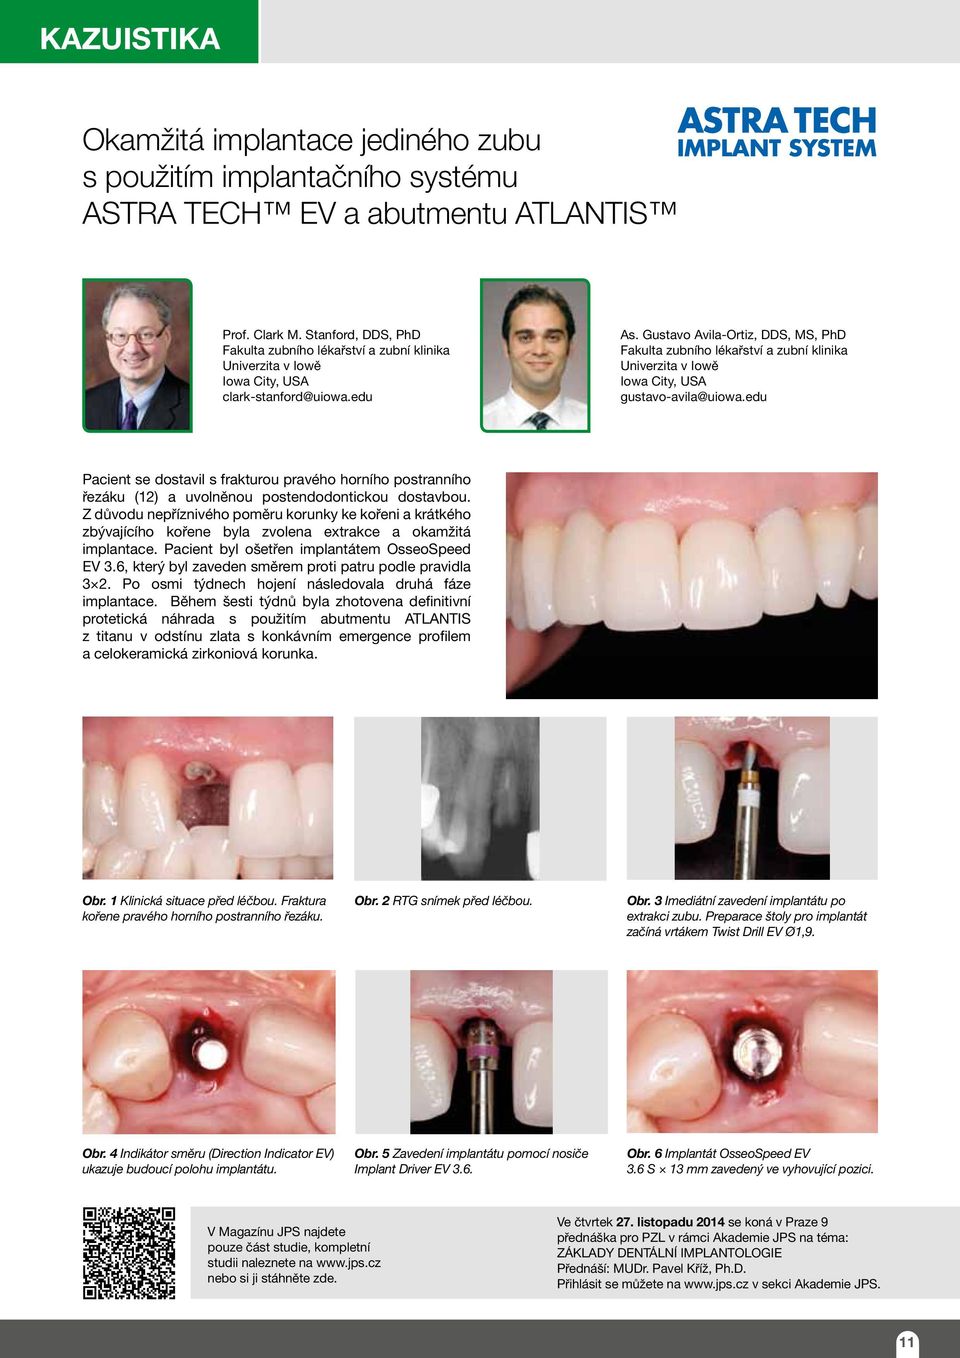 Gustavo Avila-Ortiz, DDS, MS, PhD Fakulta zubního lékařství a zubní klinika Univerzita v Iowě Iowa City, USA gustavo-avila@uiowa.